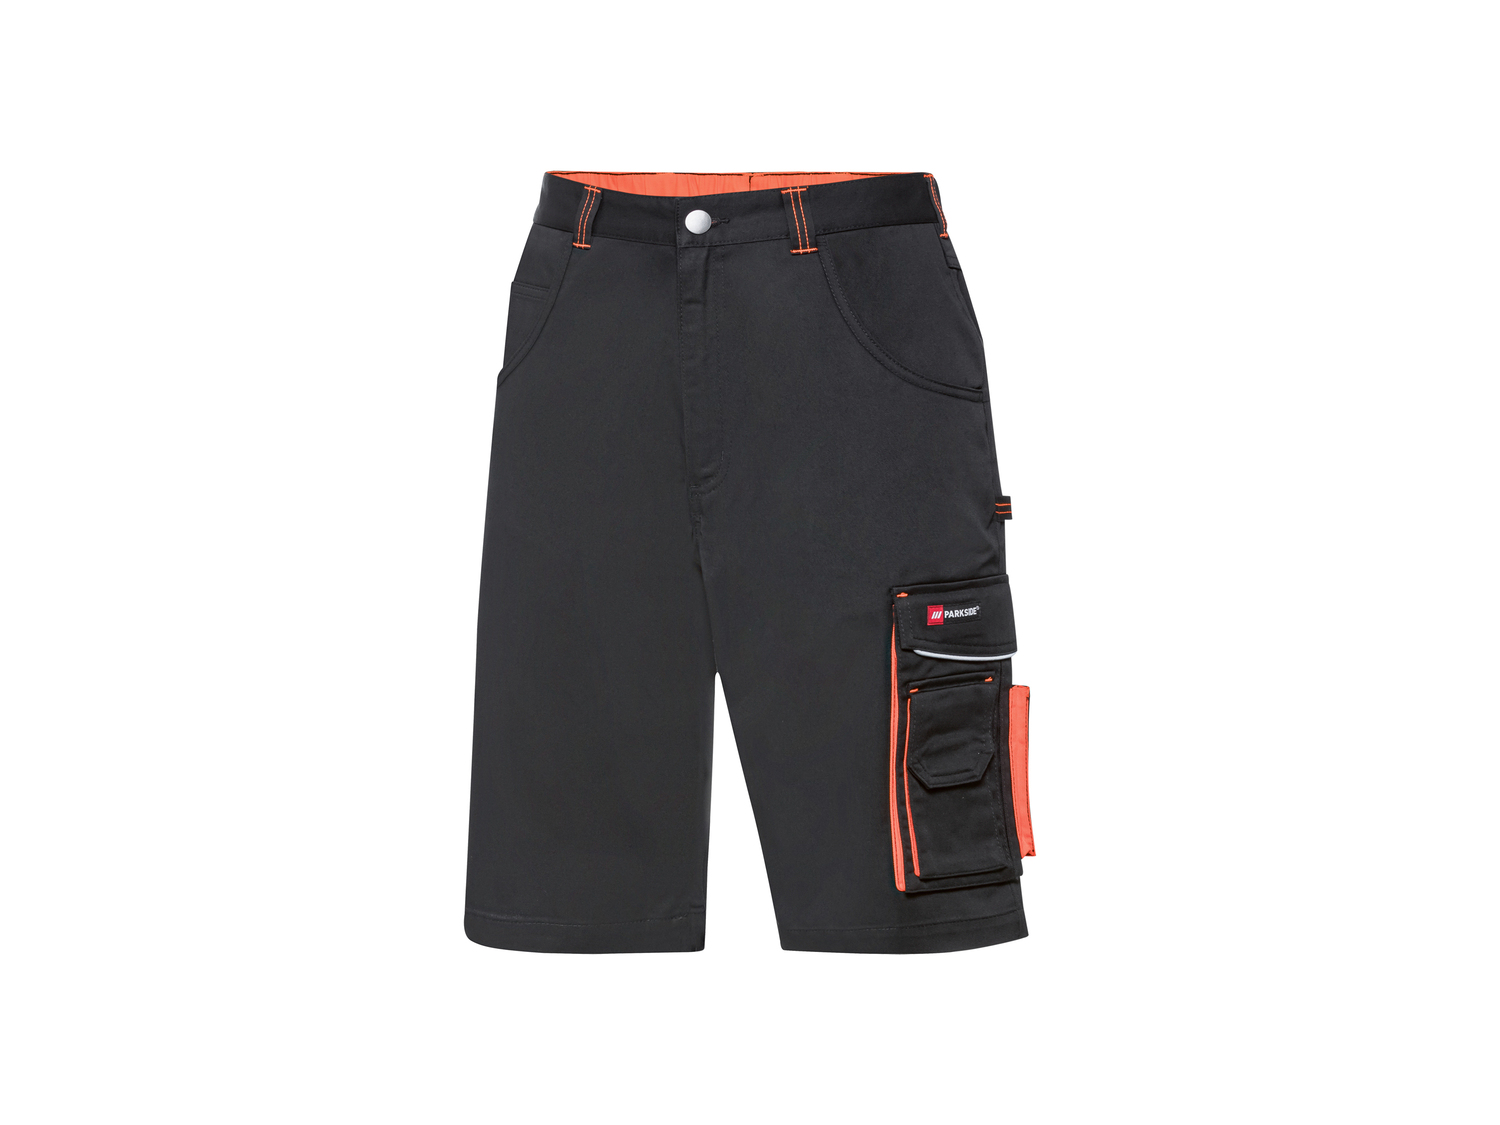 Pantaloni corti da lavoro per uomo Parkside, prezzo 11.99 &#8364; 
Misure: 48-58
Taglie ...